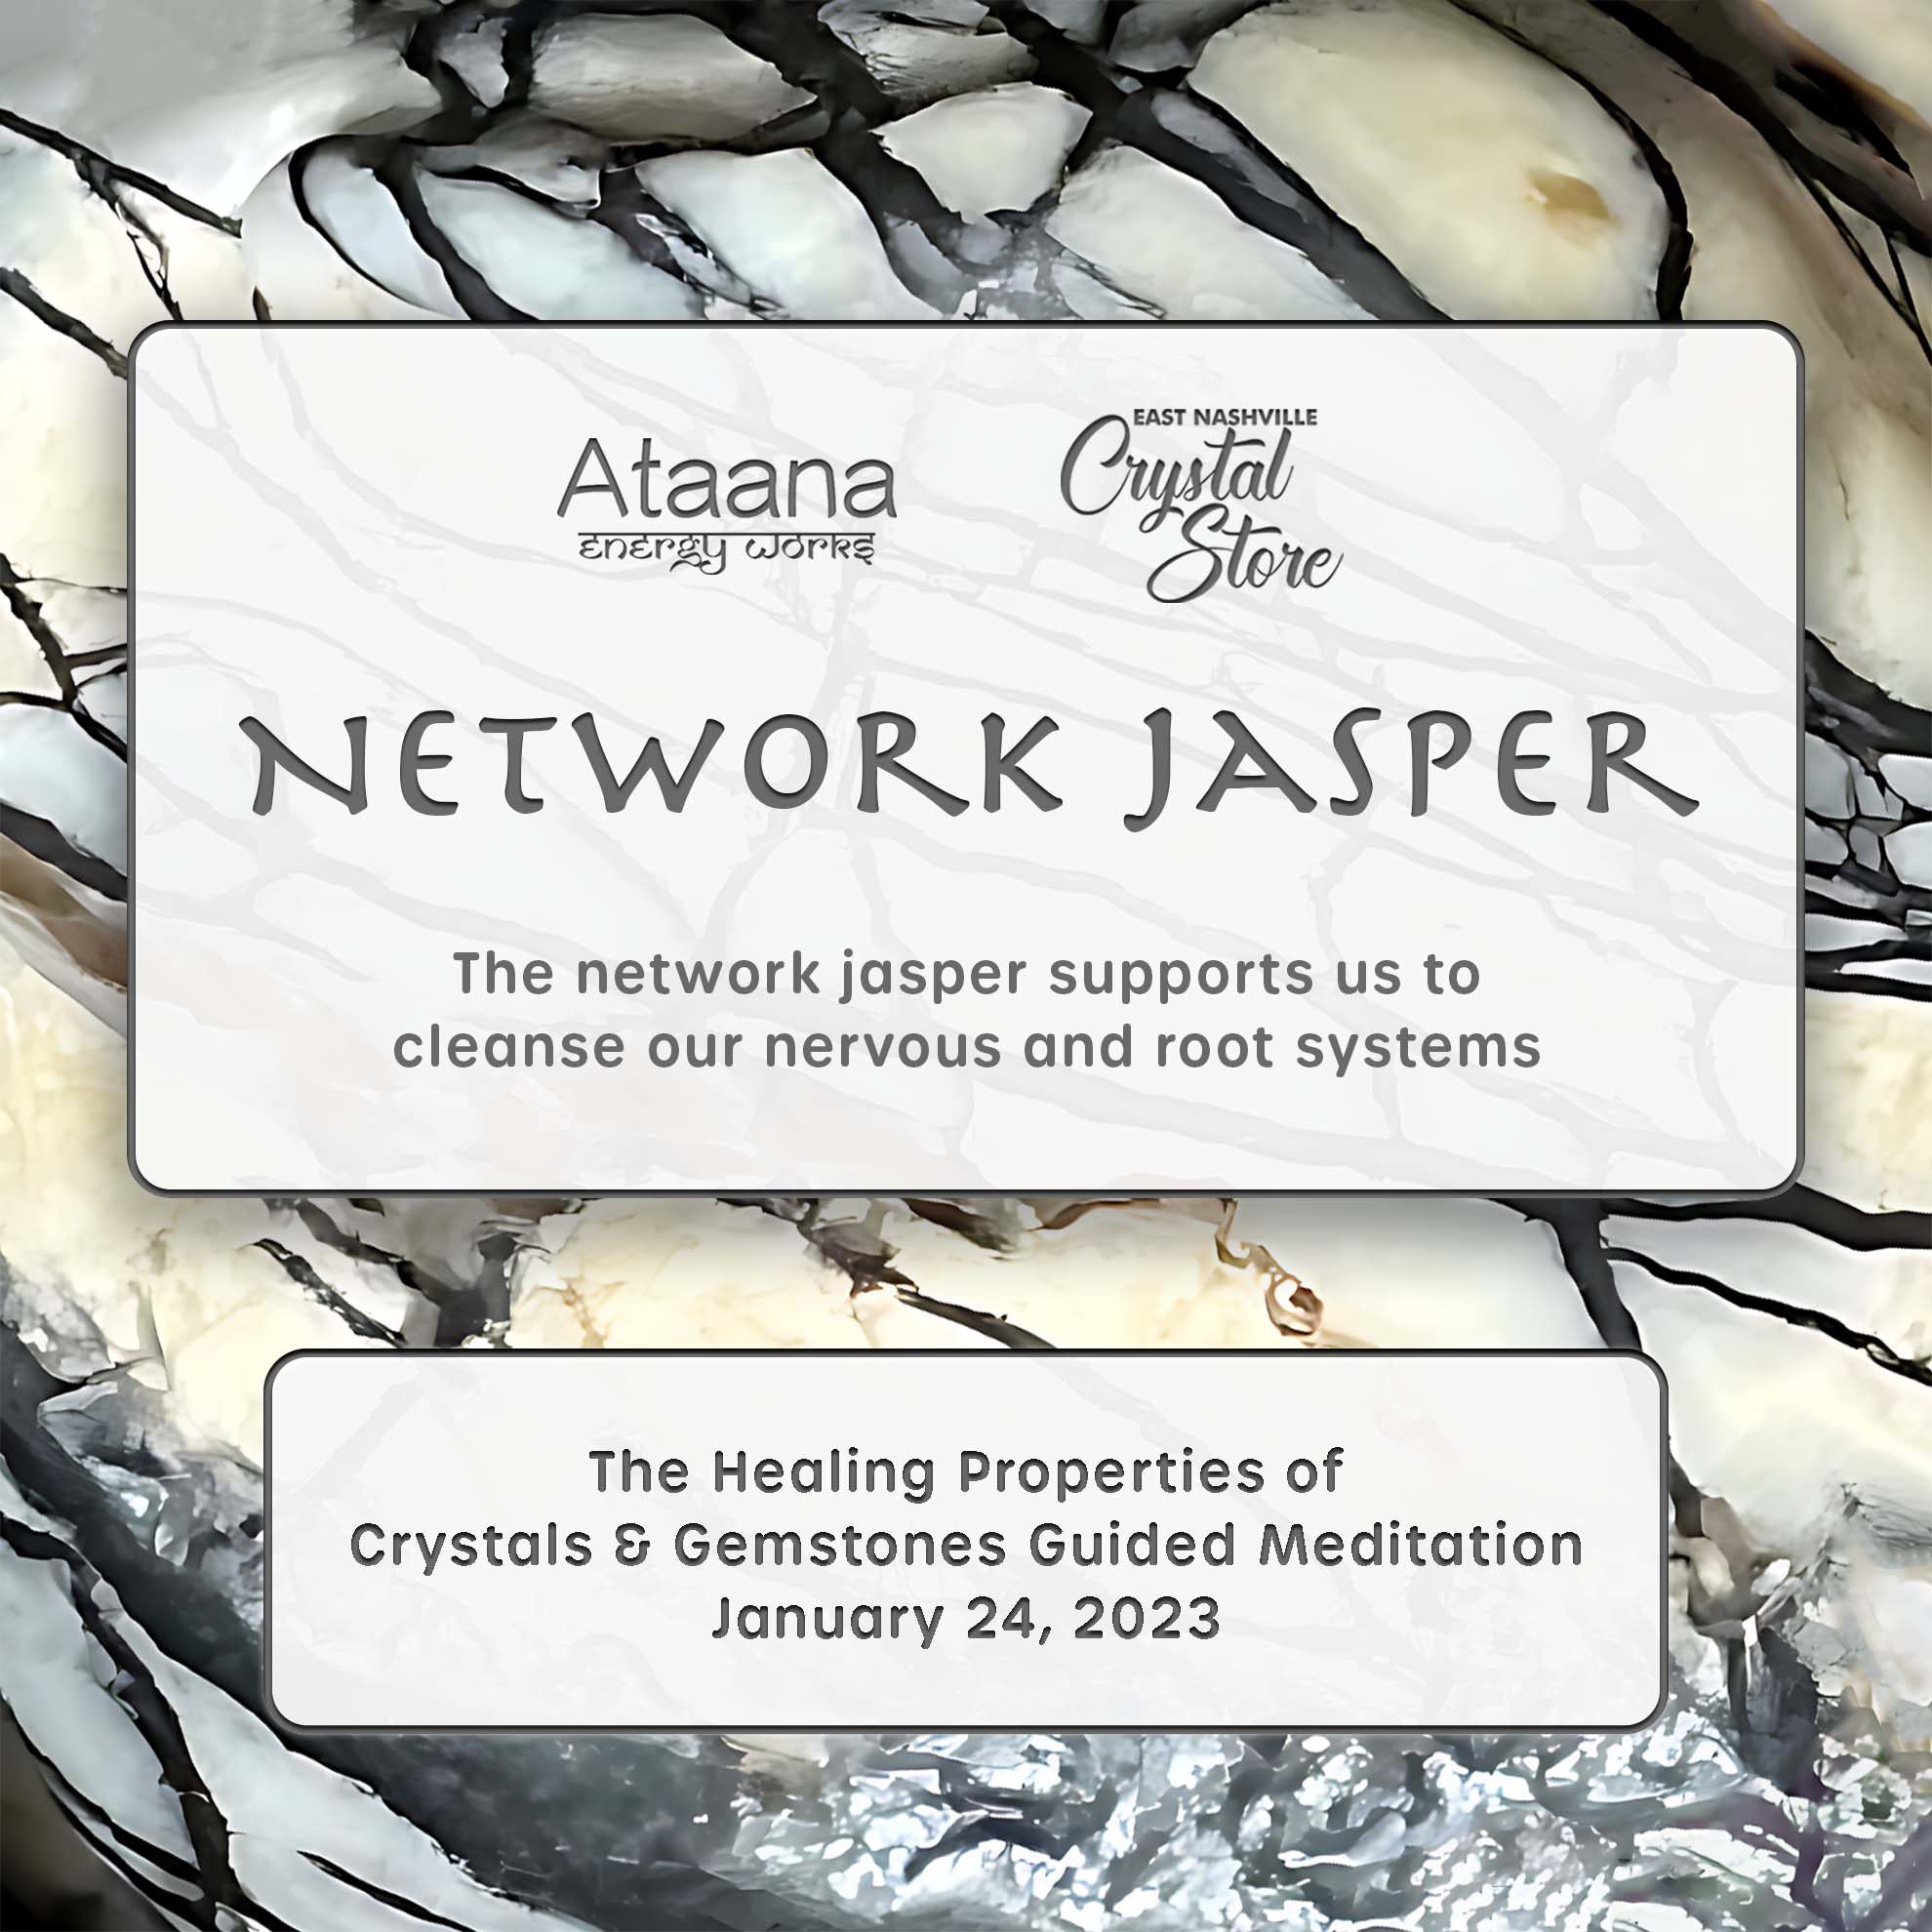 Ataana Method Nashville Crystal Store Network Jasper Guided Meditation